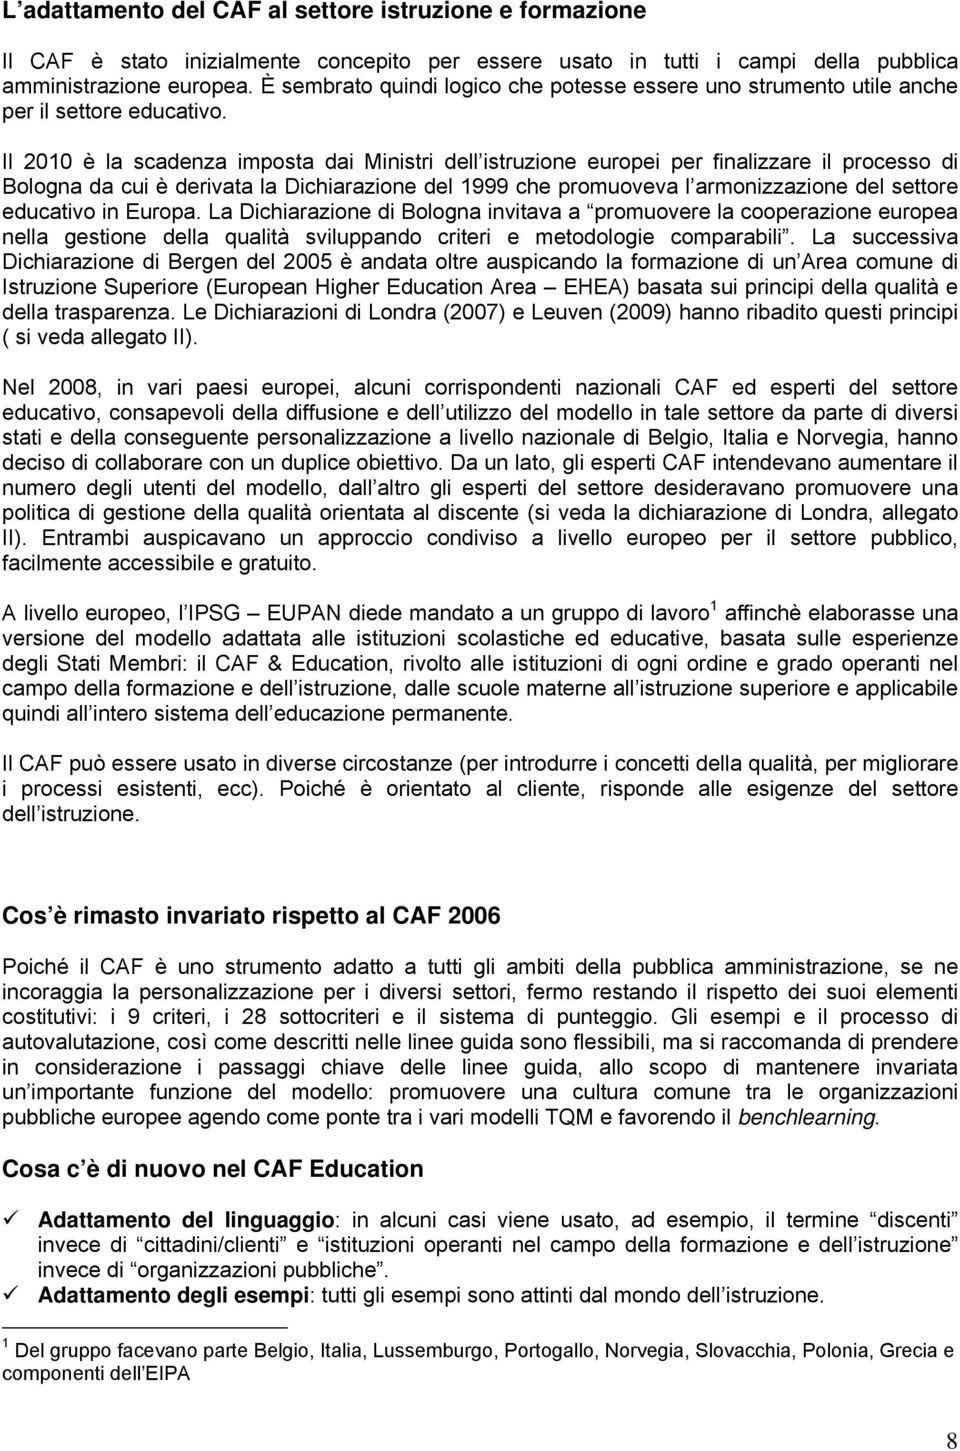 Il 2010 è la scadenza imposta dai Ministri dell istruzione europei per finalizzare il processo di Bologna da cui è derivata la Dichiarazione del 1999 che promuoveva l armonizzazione del settore